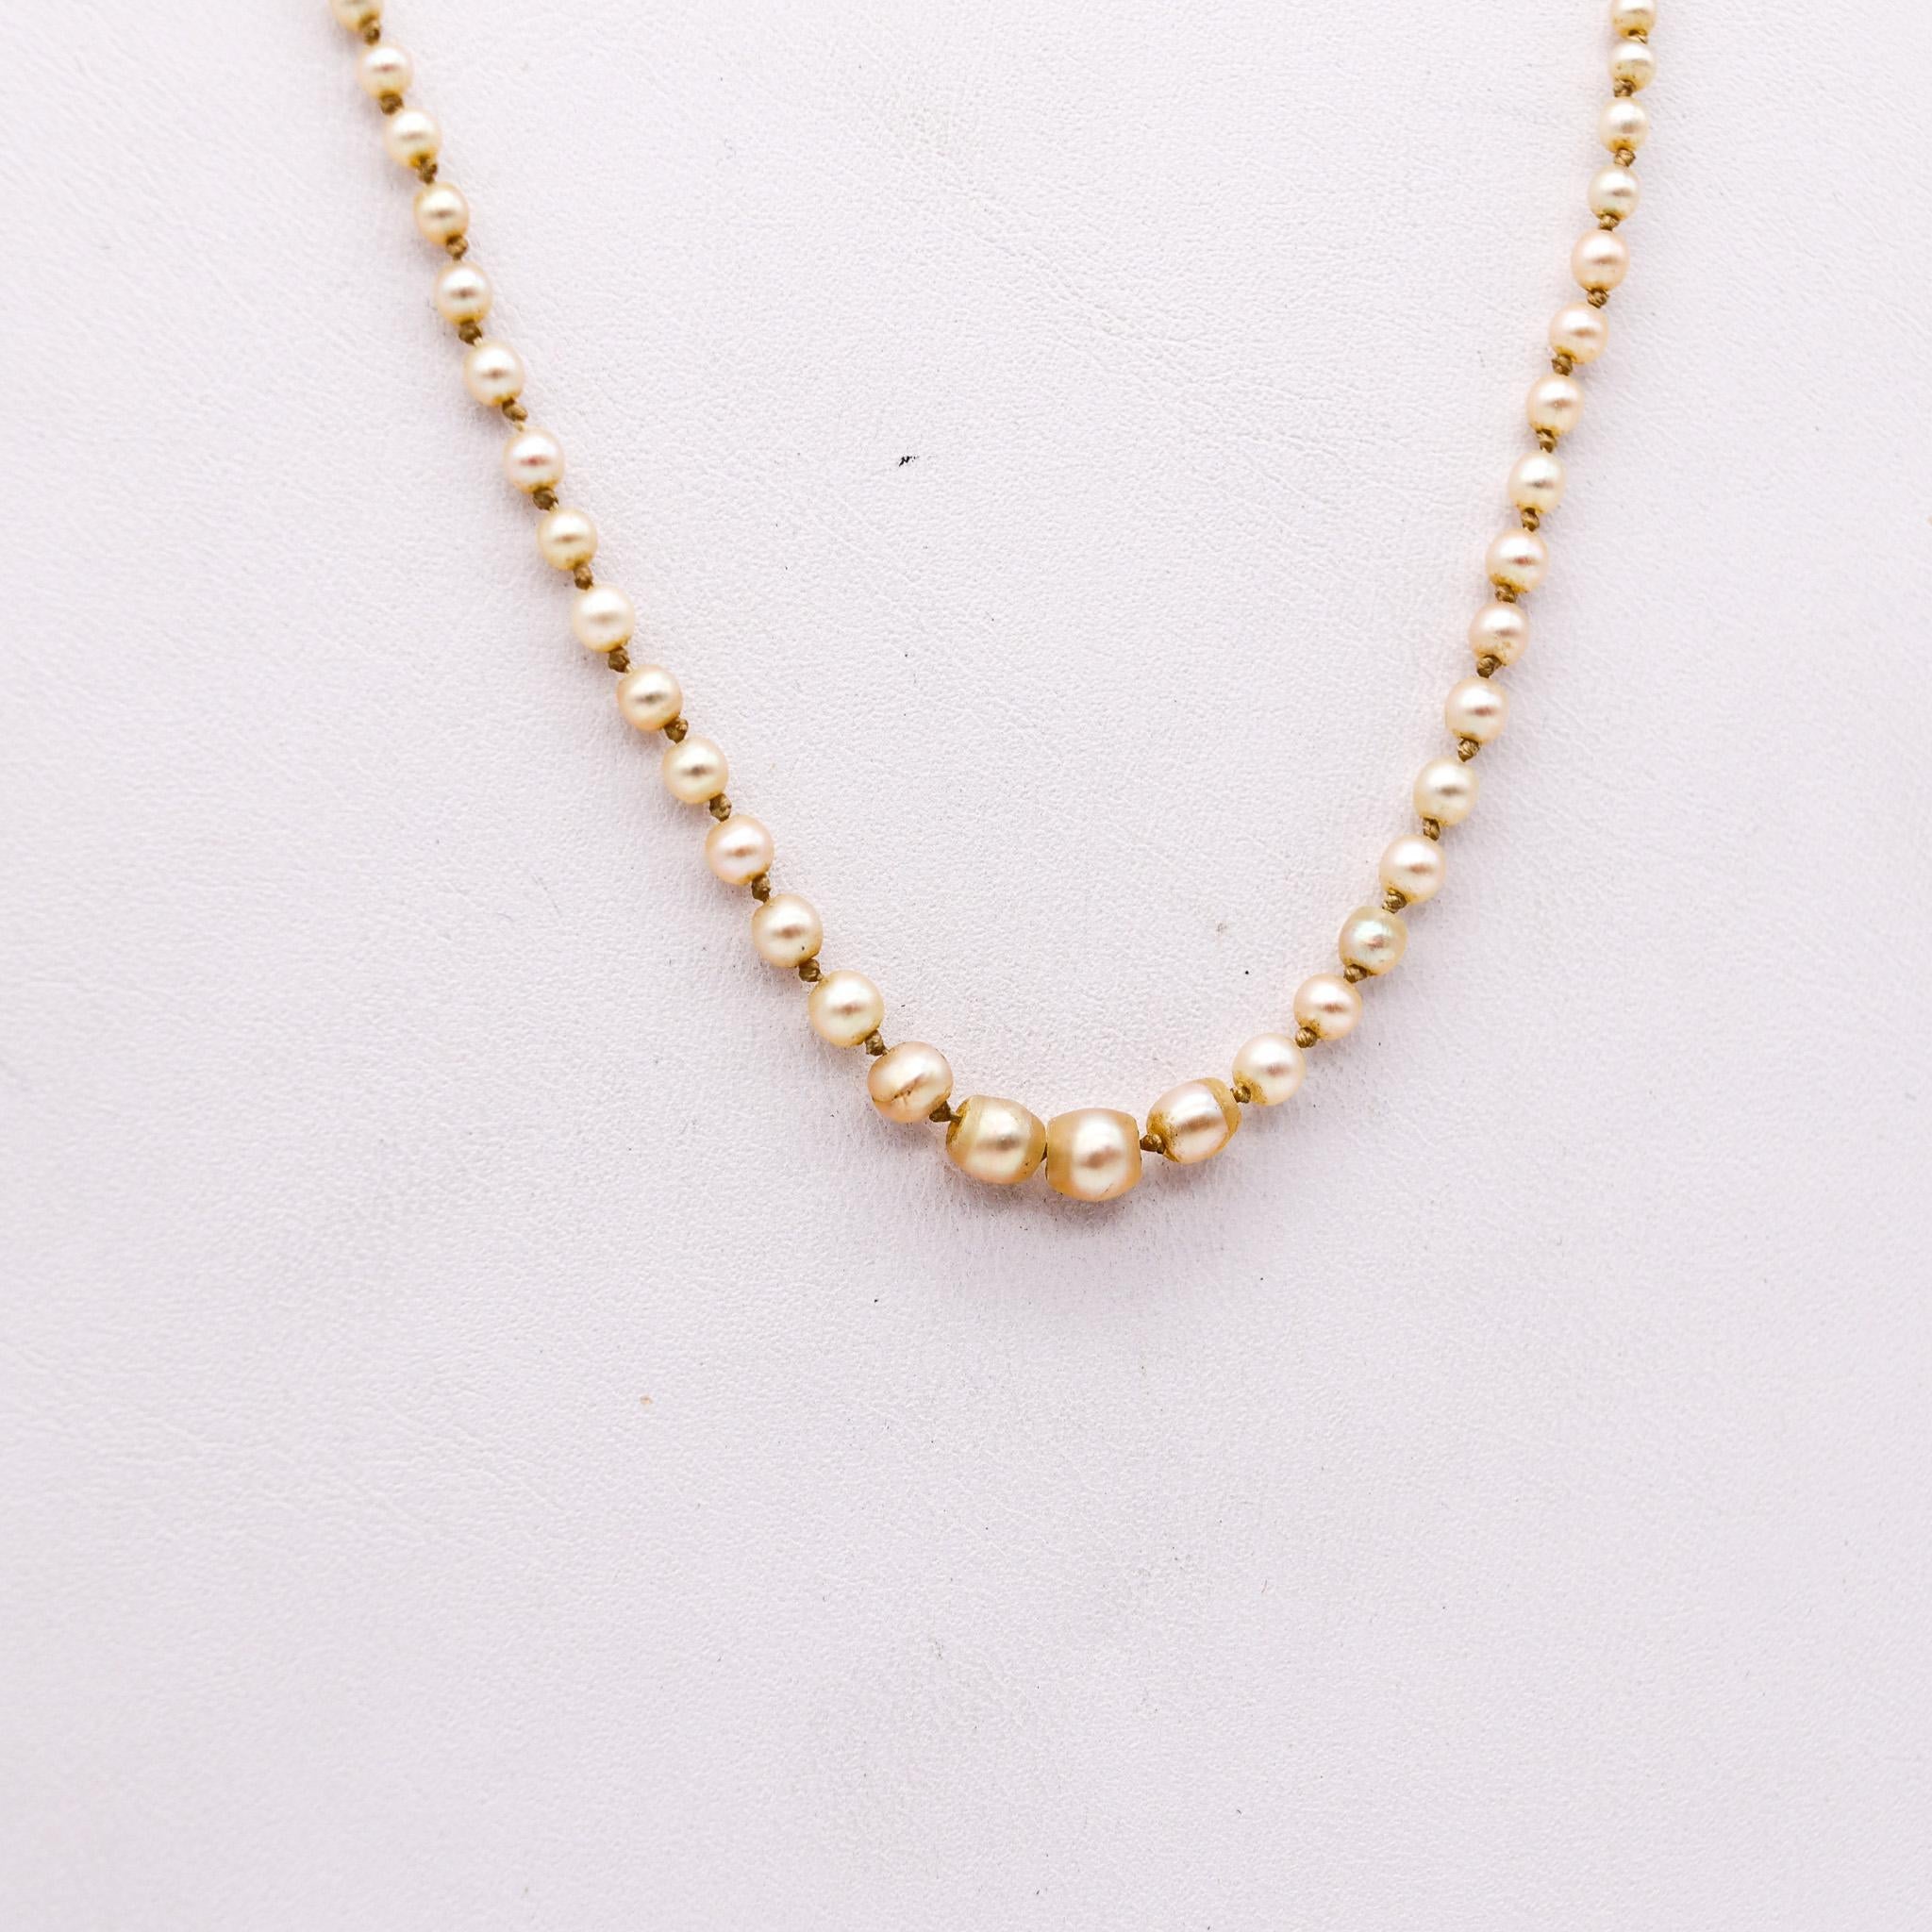 Edwardian belle époque Perlen Halskette.

Äußerst schickes und sehr zartes Collier, das in England während der edwardianischen Belle-Epoque-Zeit um 1910 entstand. Dieses Collier besteht aus einem geknoteten Strang von einhundertzweiundvierzig Perlen